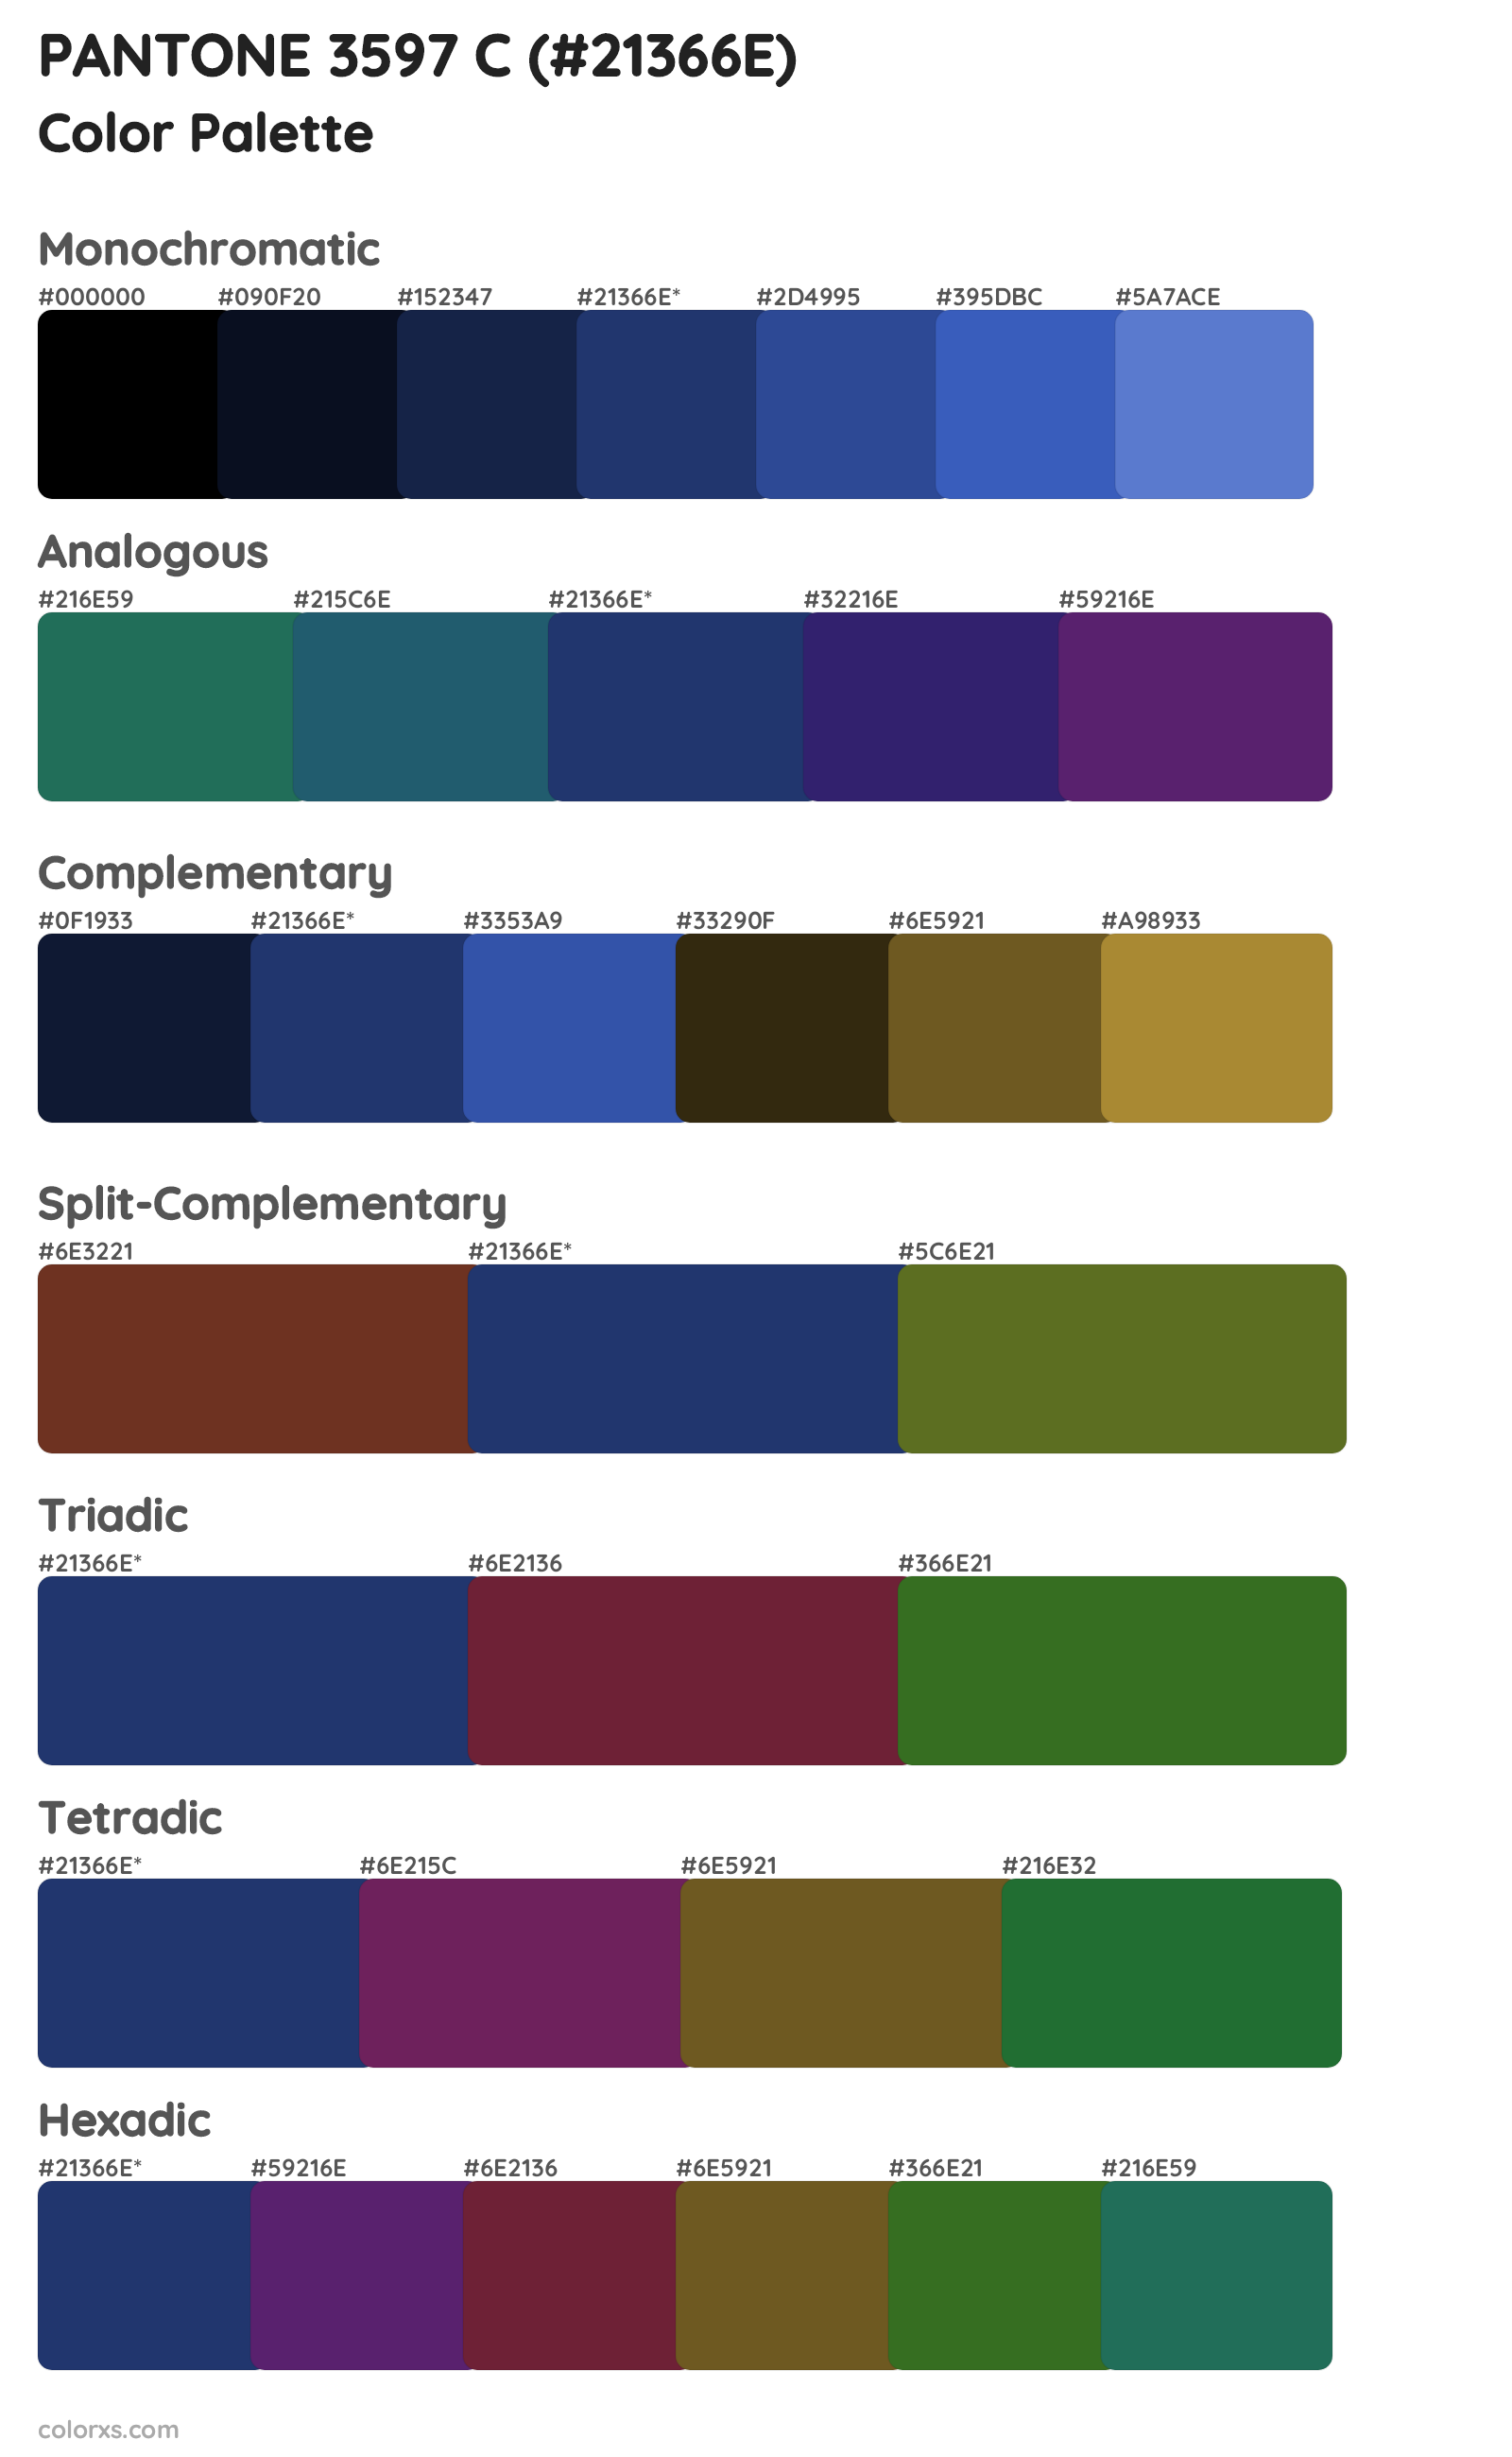 PANTONE 3597 C Color Scheme Palettes